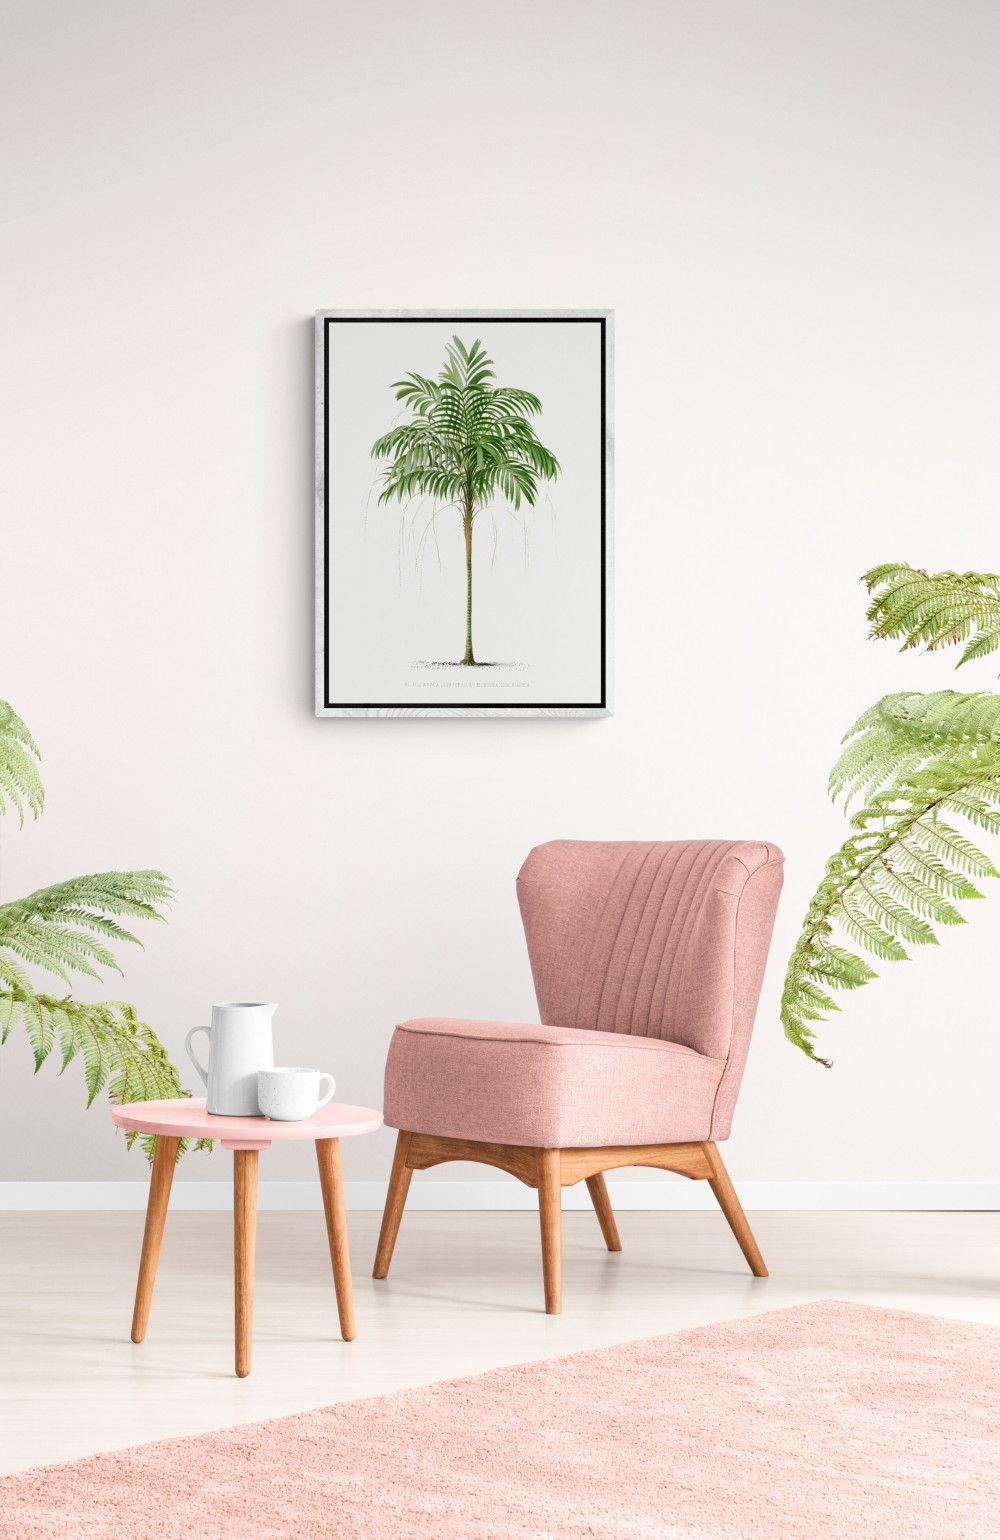 Vintage palm tree illustration 3